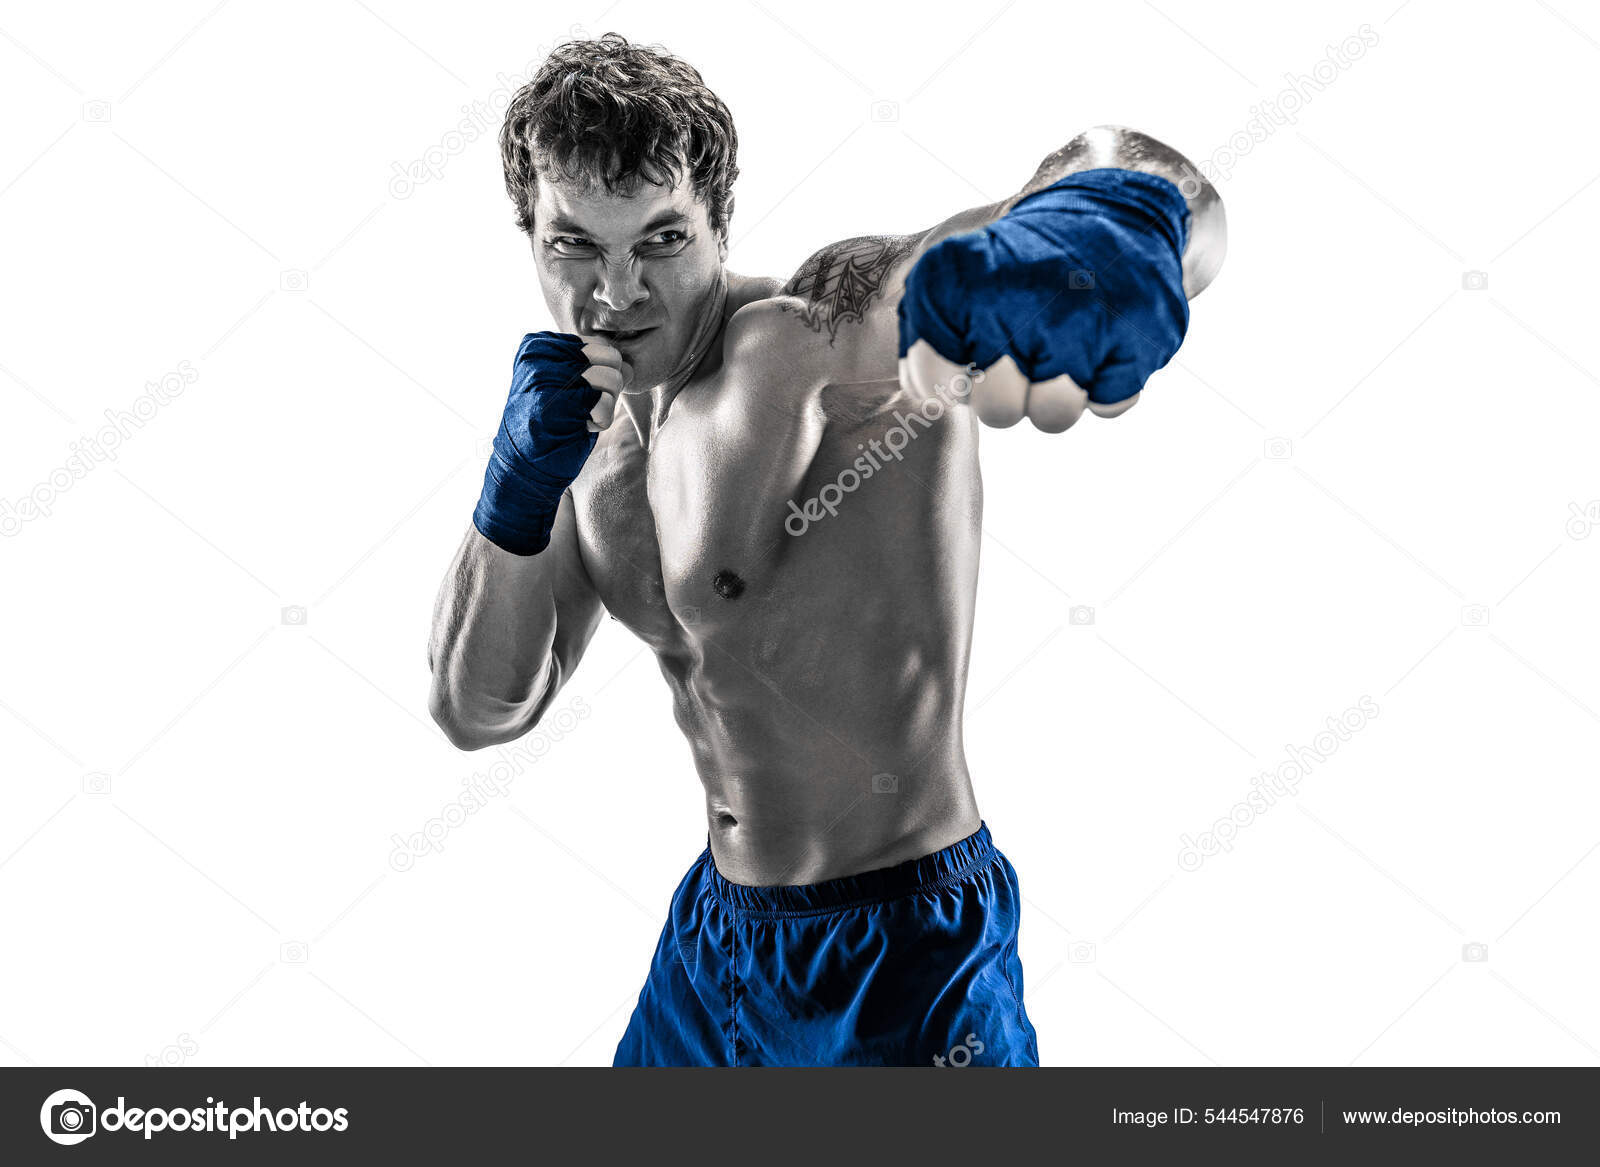 Sea Fuerte Hombre En La Perforaci?n De Los Guantes De Boxeo Deporte Y Moda  De La Ropa De Deportes Hombre Del Boxeador En Capilla Foto de archivo -  Imagen de lucha, azul: 153239886